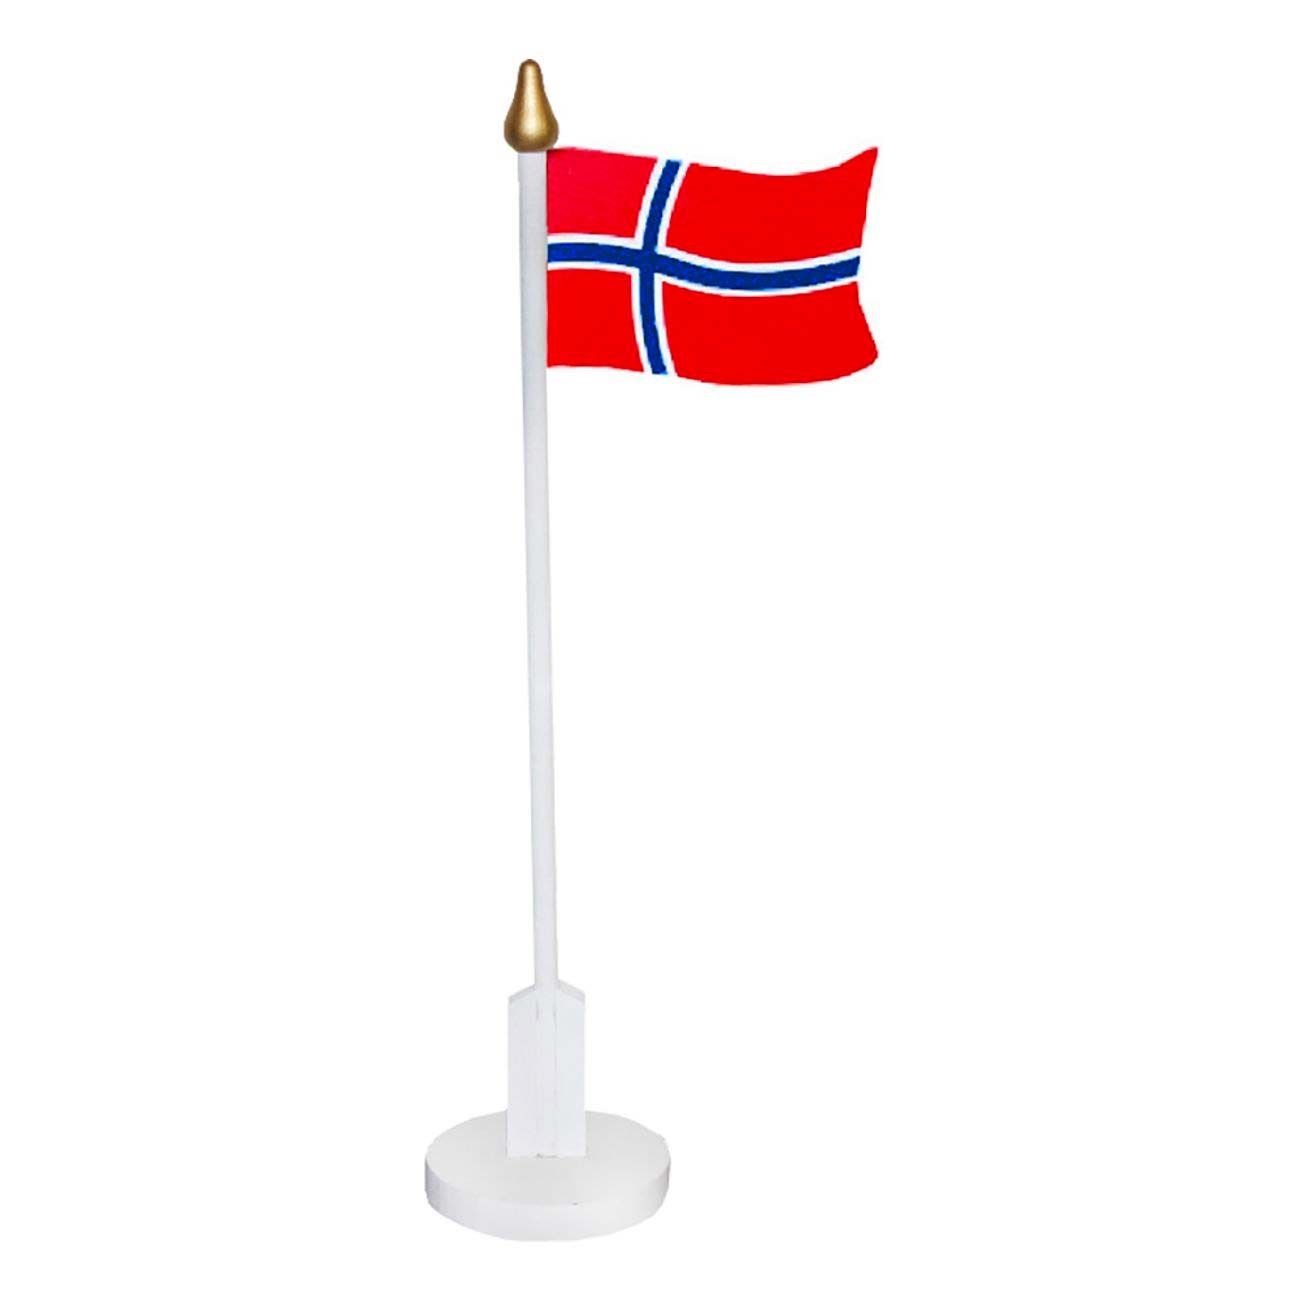 bordsflagga-i-tra-norska-flaggan-93461-1